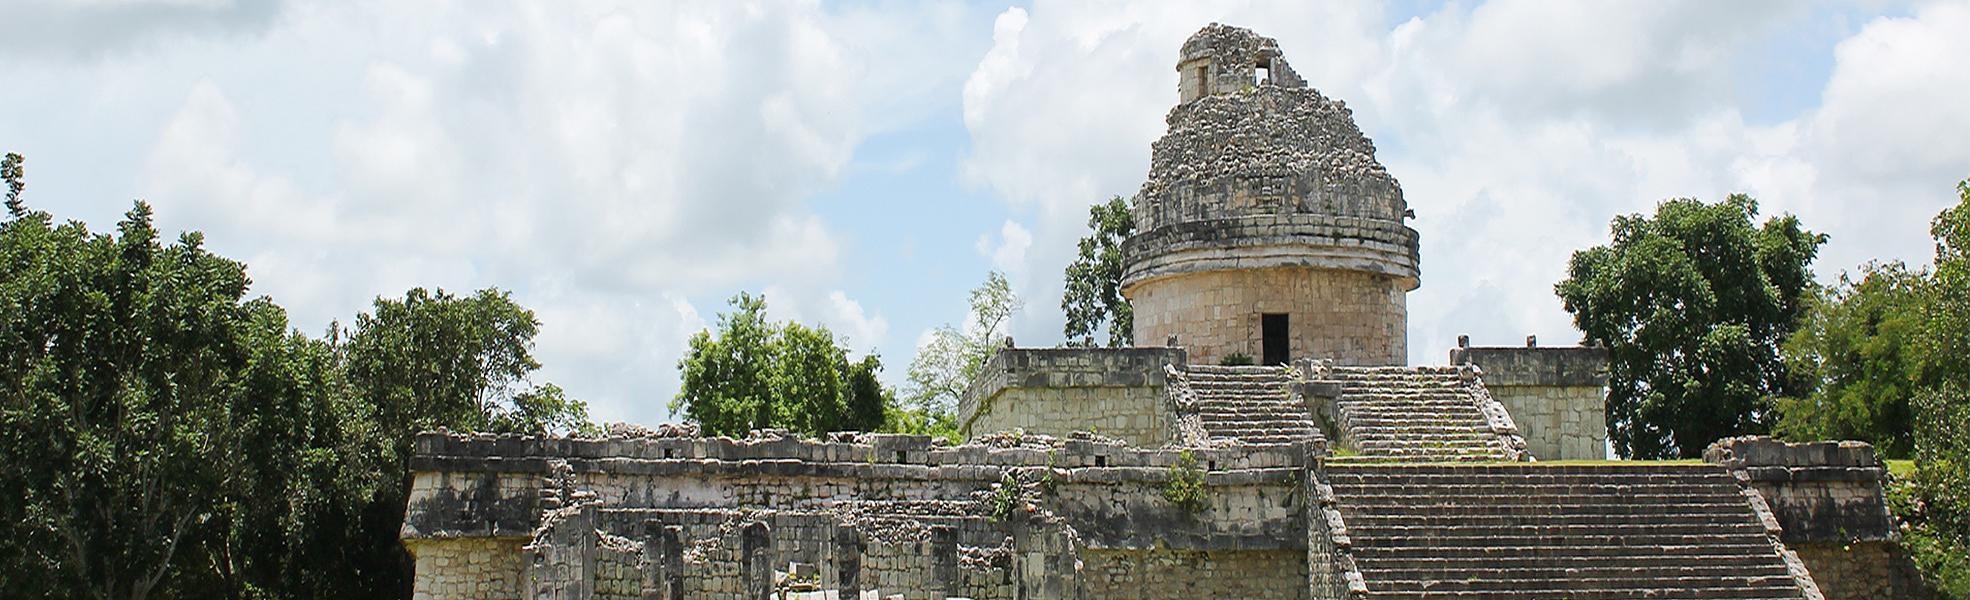 Mayan Ruins at Yucatan Peninsula